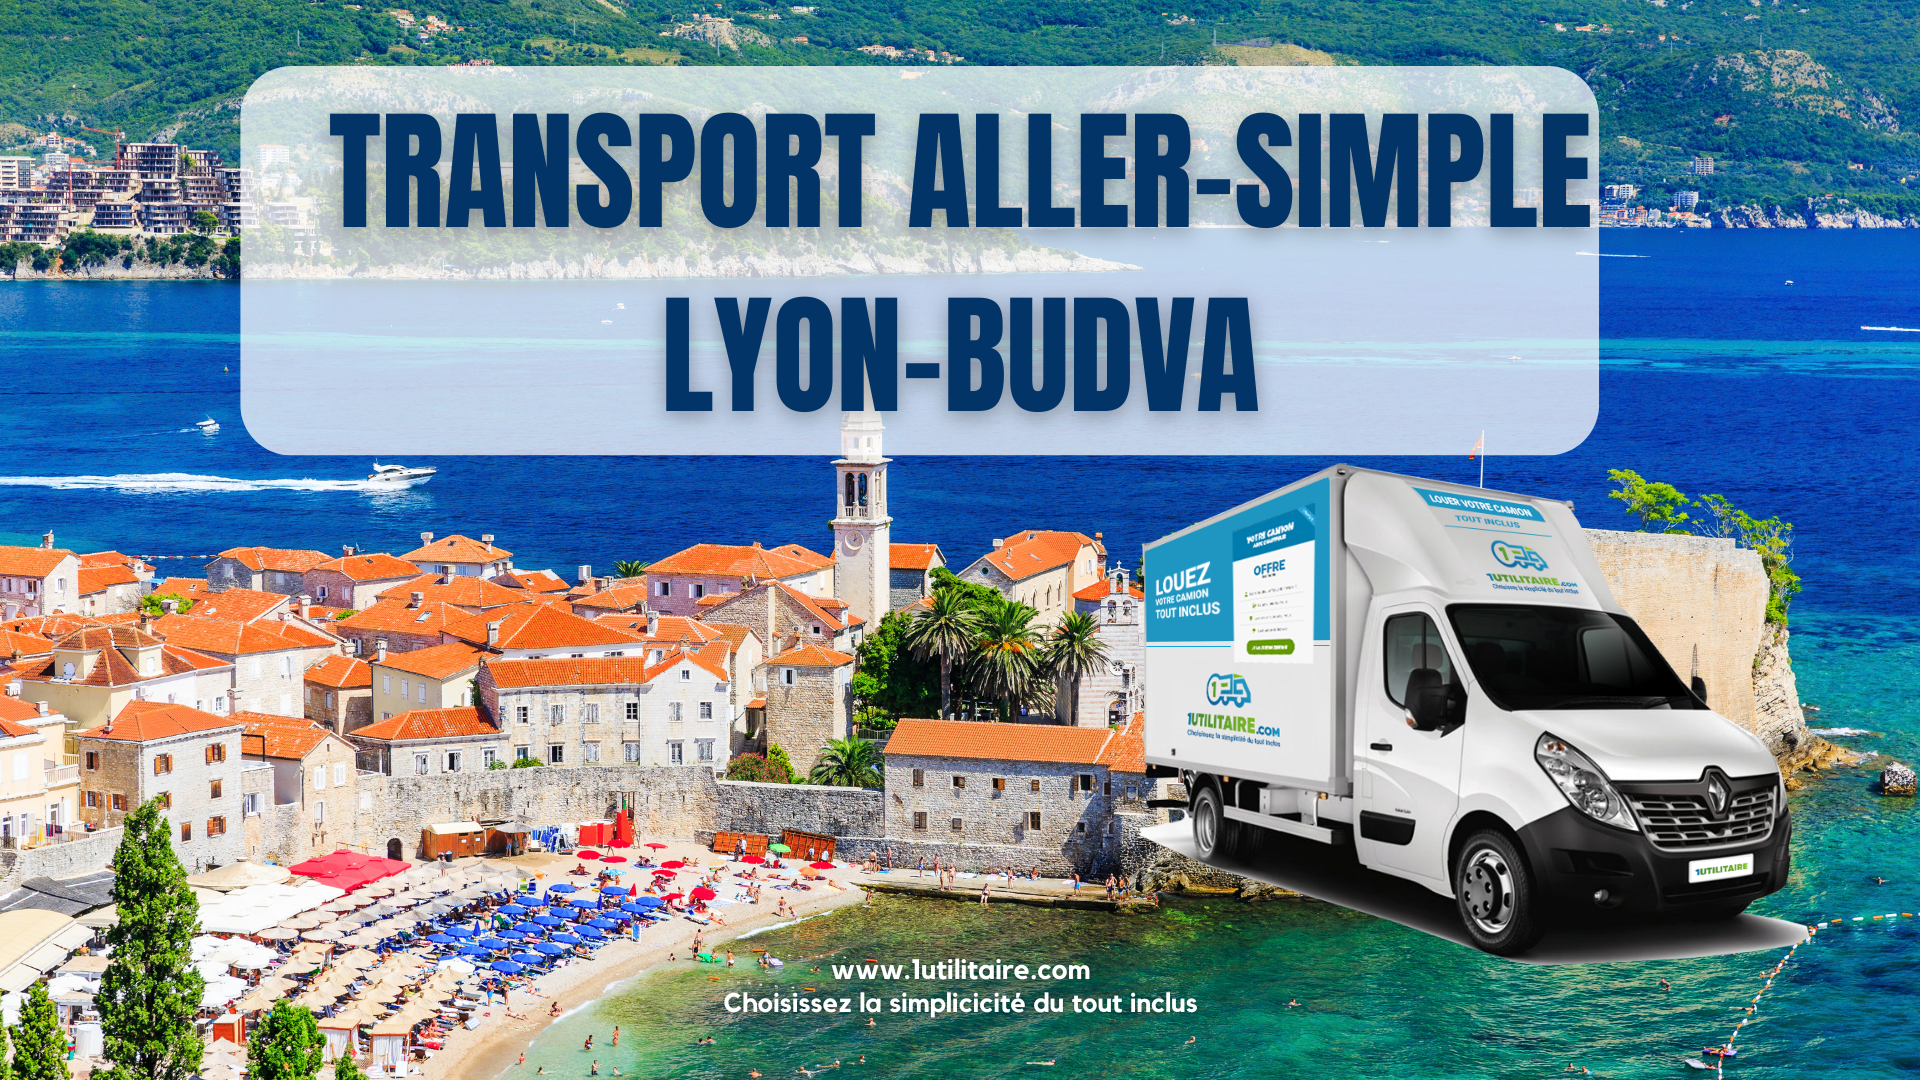 Transport aller - simple Lyon - Budva